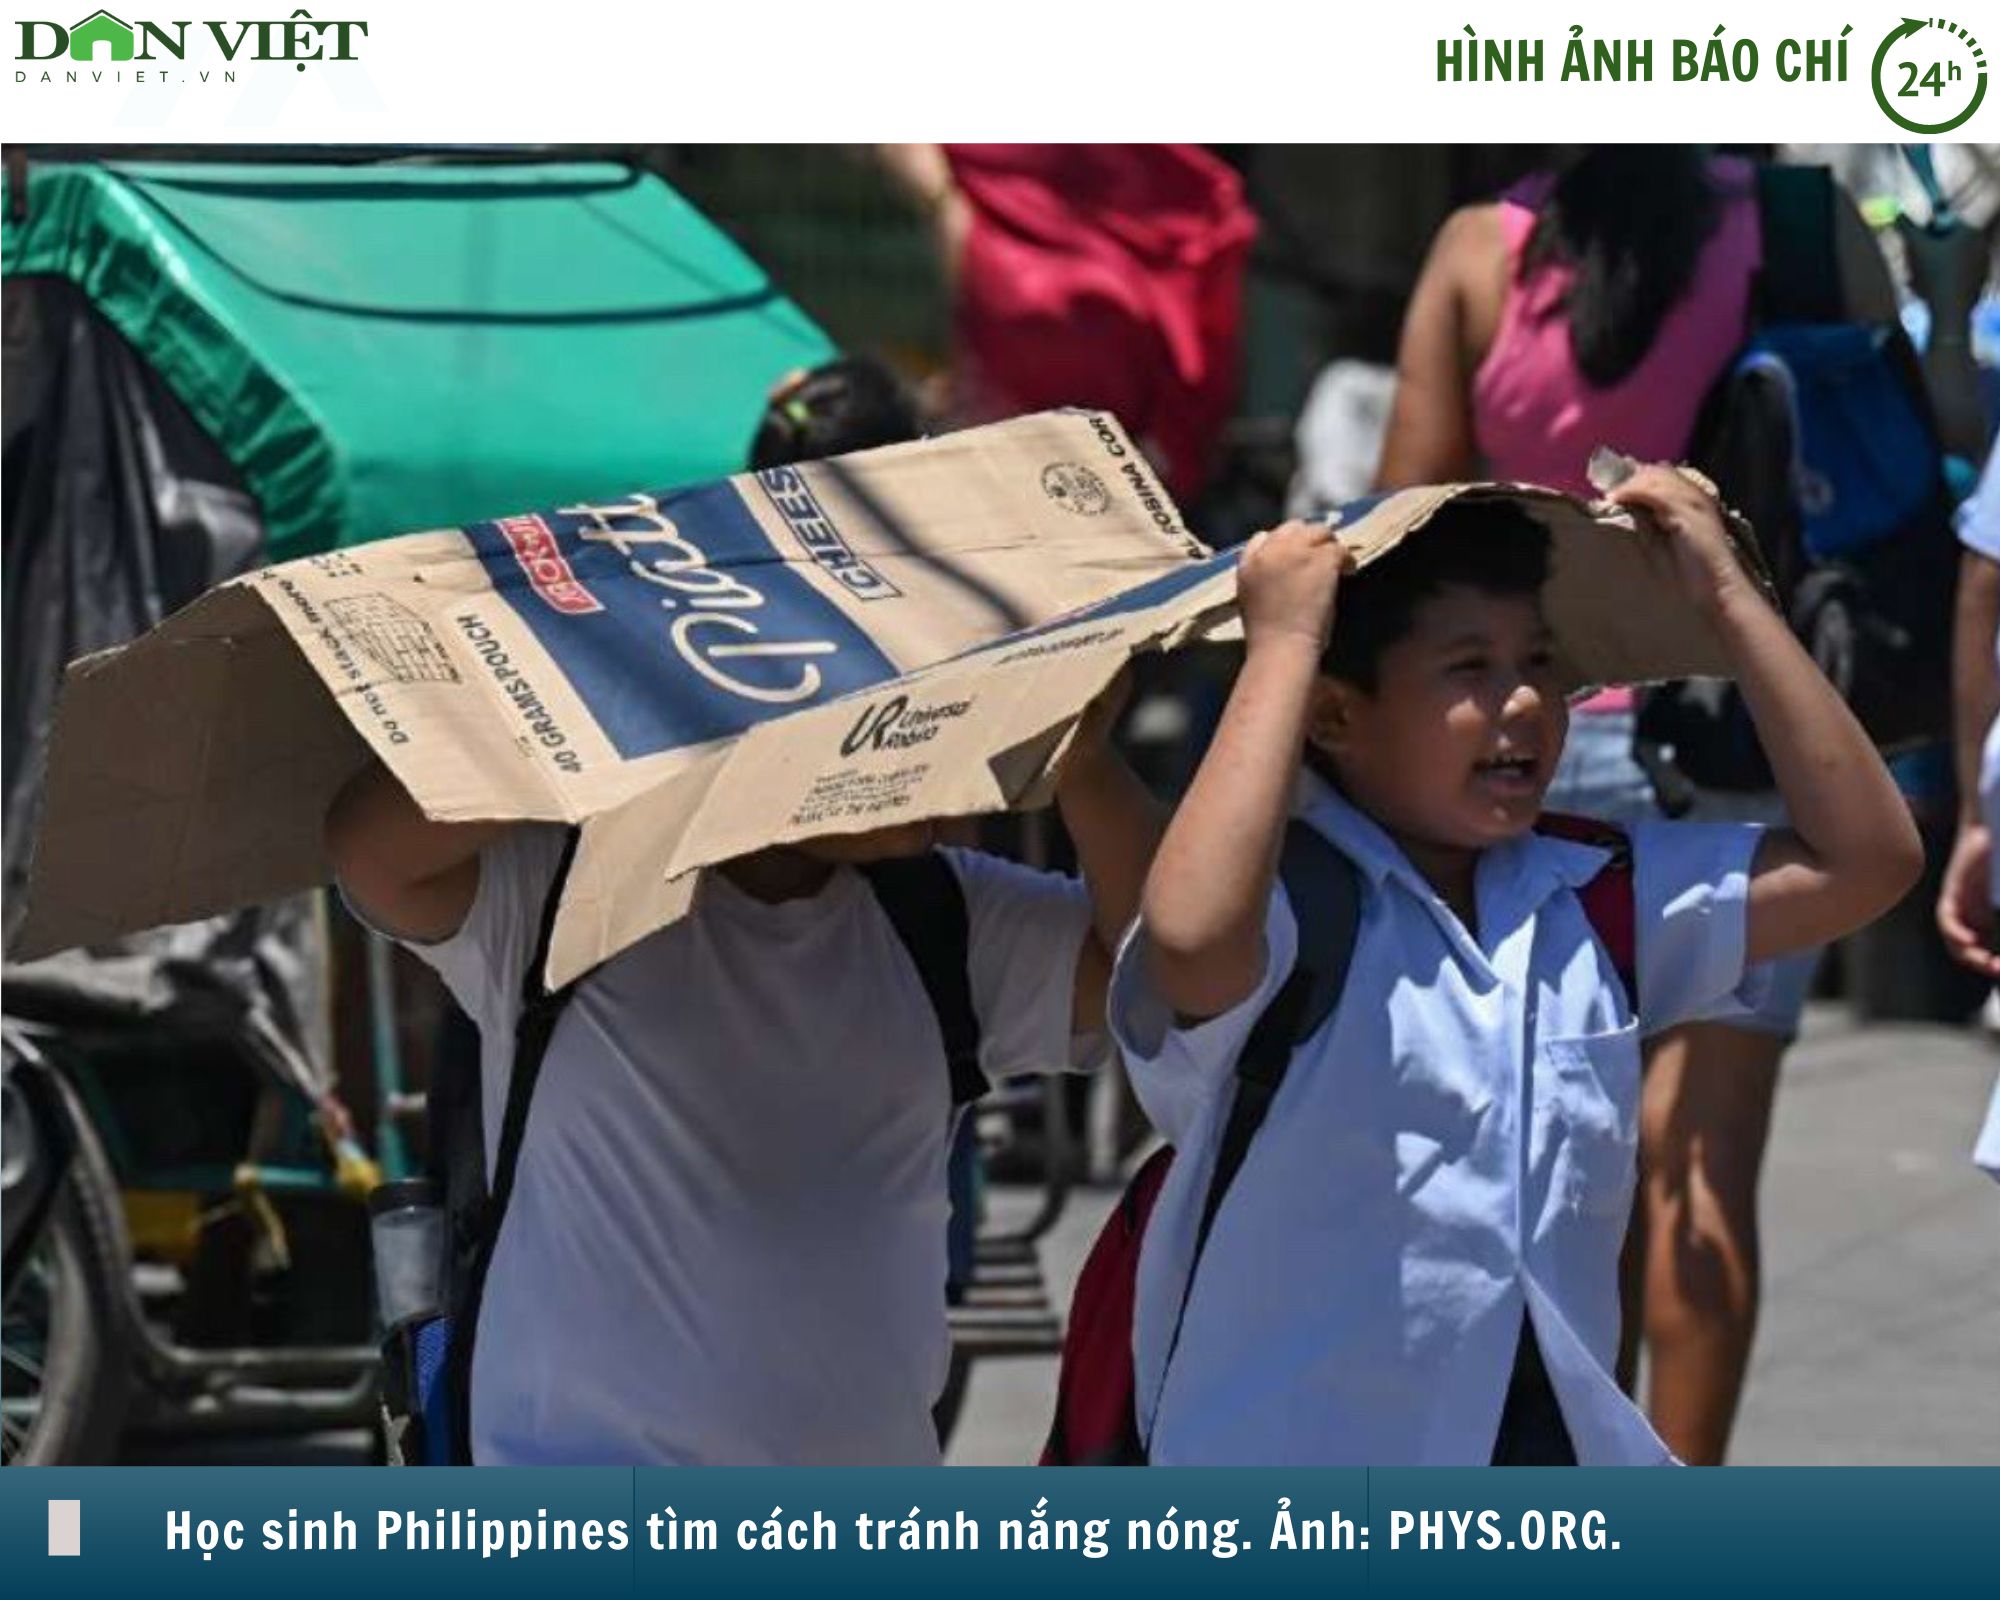 Hình ảnh báo chí 24h: Nắng nóng gay gắt ở Đông Nam Á khiến nhiều quốc gia đưa ra cảnh báo- Ảnh 1.